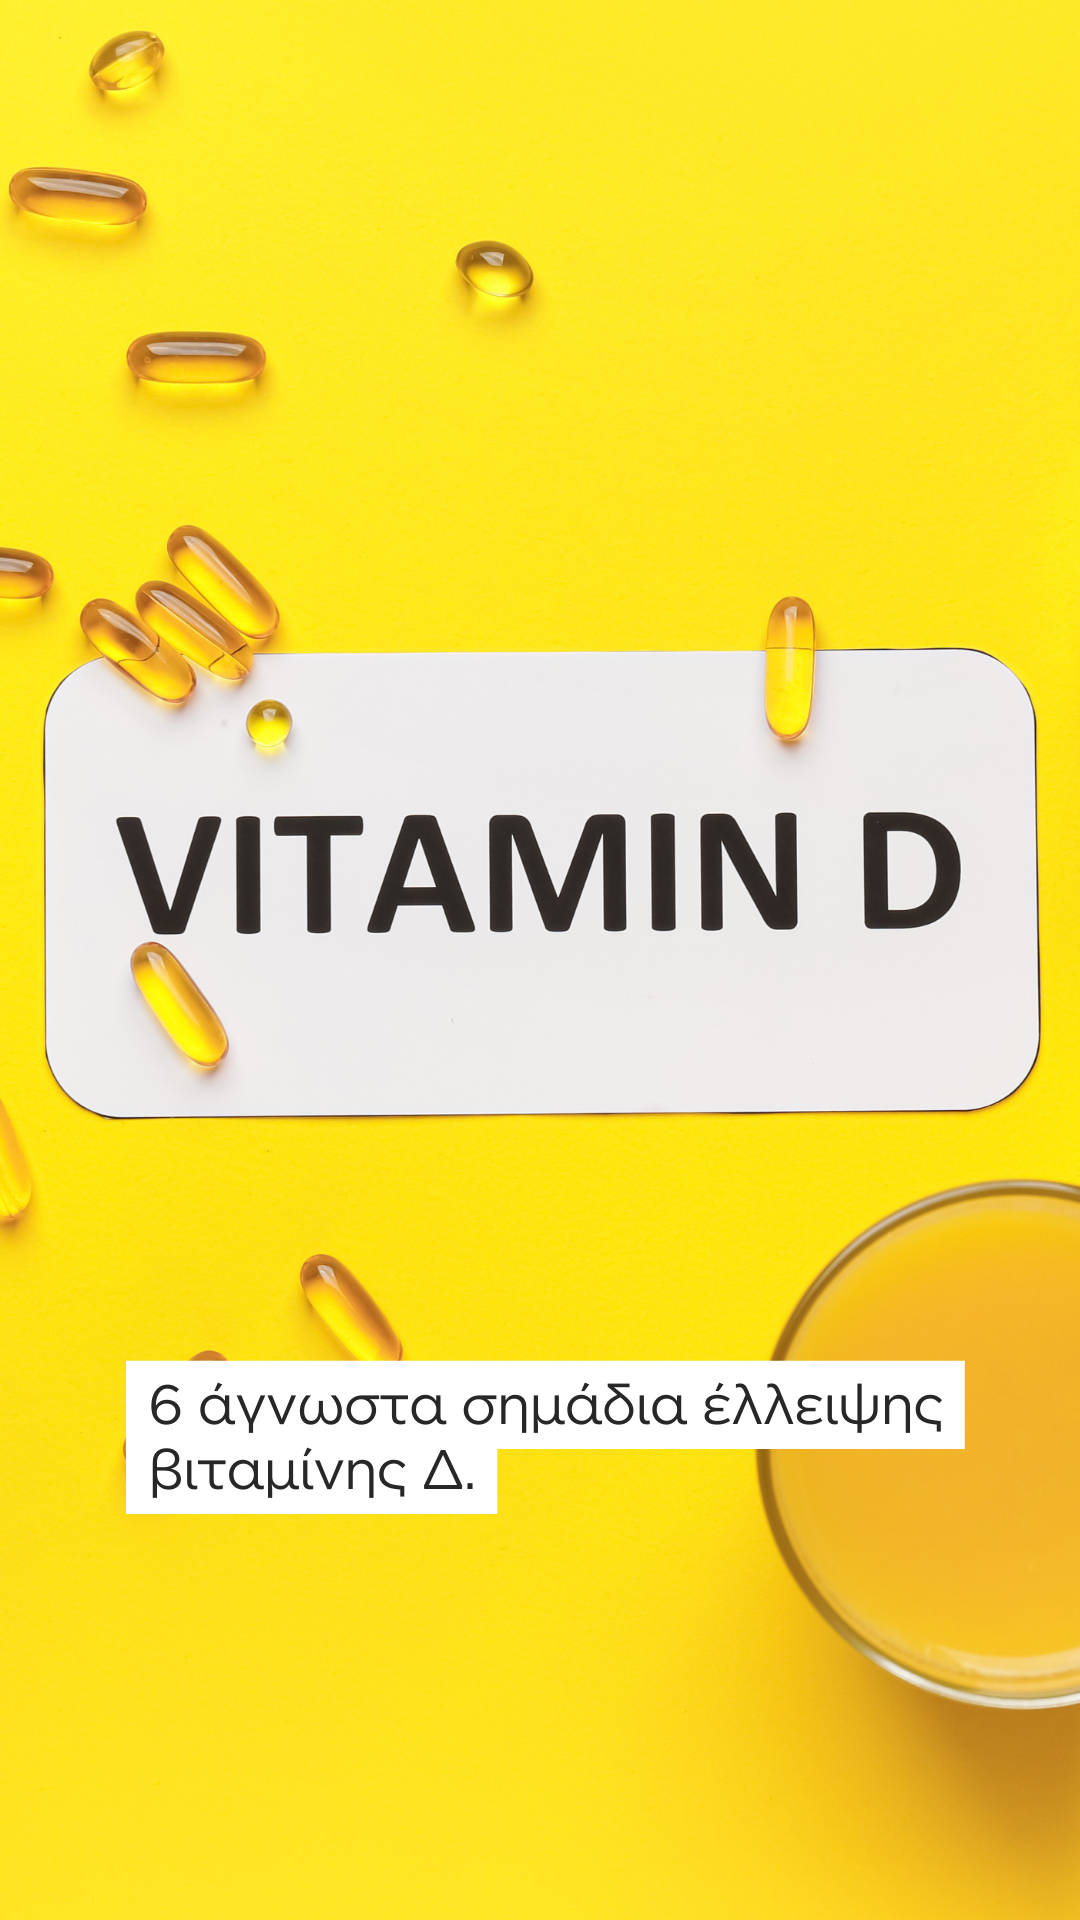 Βιταμίνη D: Γιατρός αποκαλύπτει 6 άγνωστα σημάδια που δείχνουν ότι έχετε έλλειψη